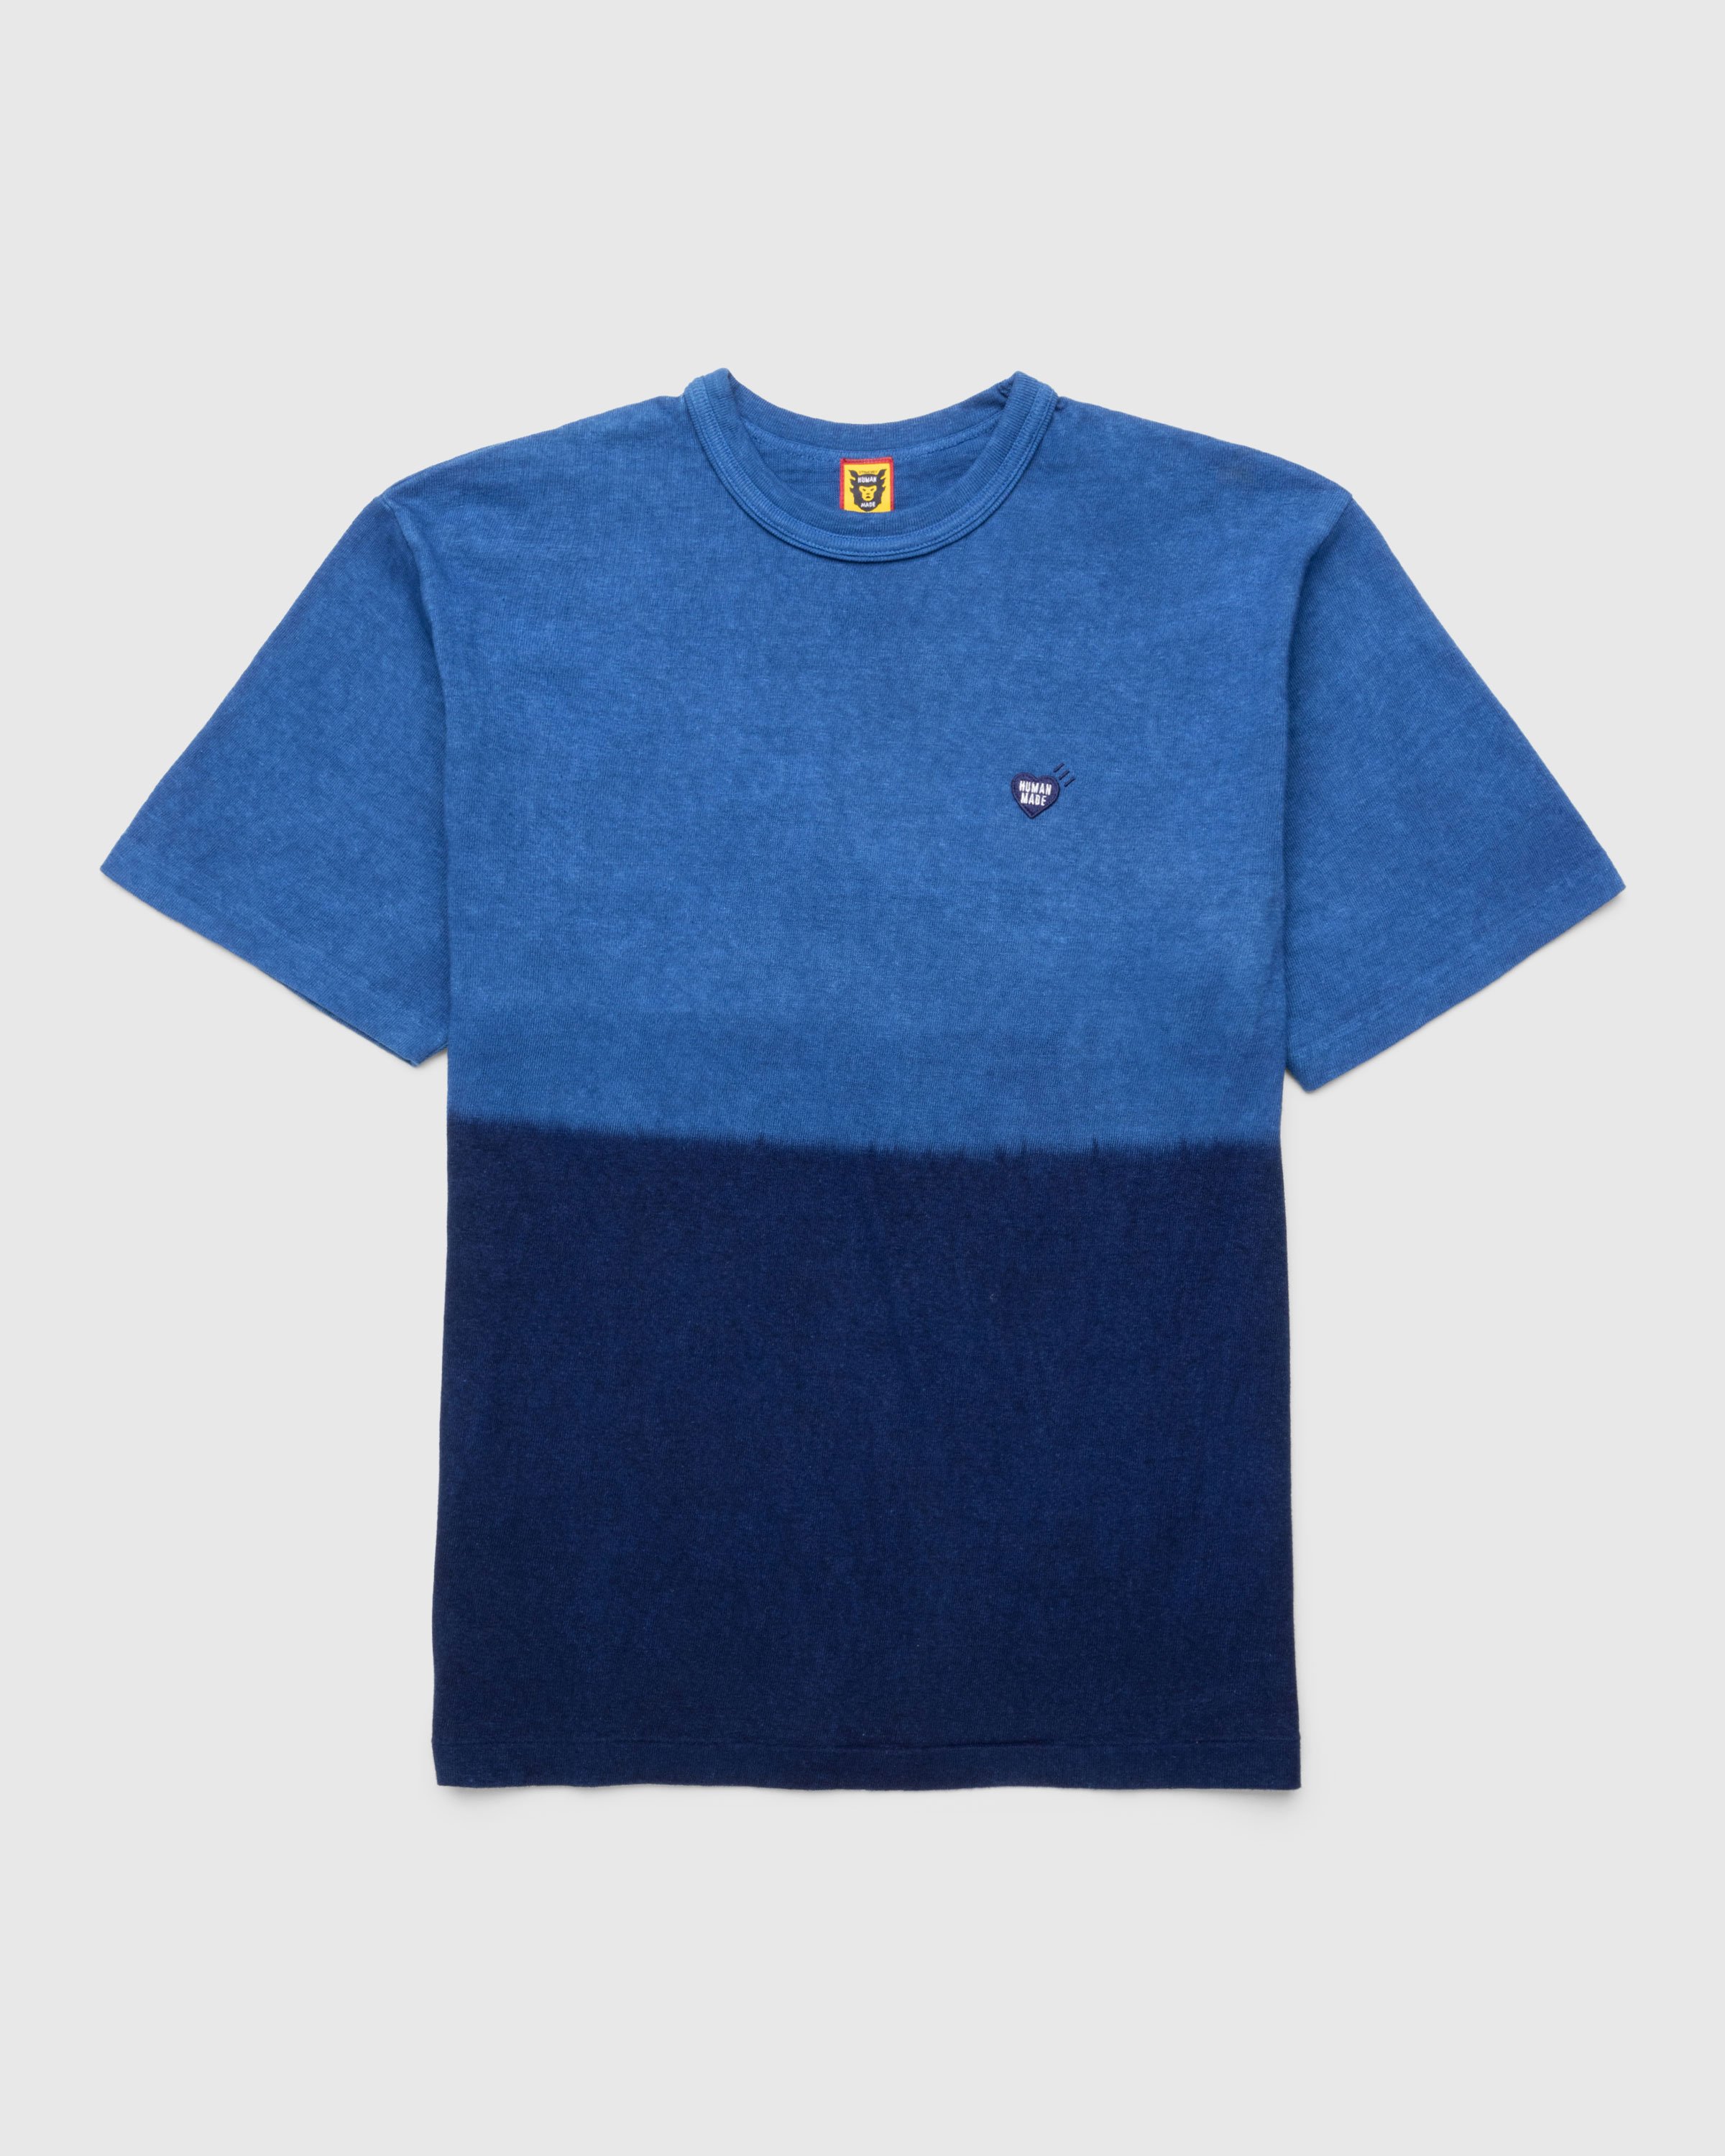 Human Made - Ningen-sei Indigo Dyed T-Shirt #2 Blue - Clothing - Blue - Image 1